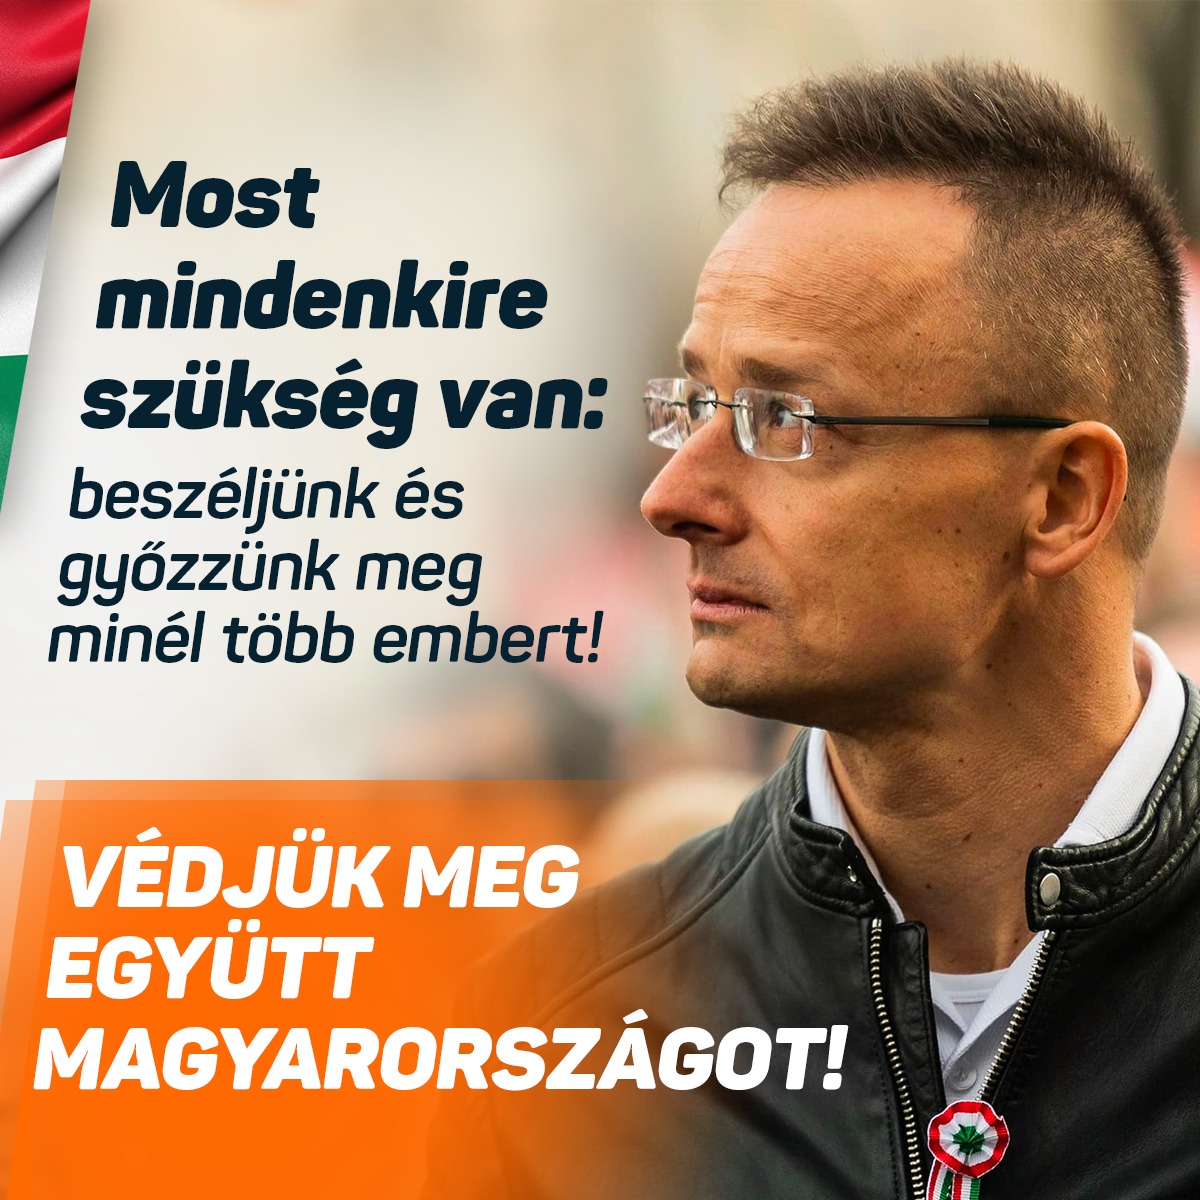 Most mindenkire szükség van, beszéljünk és győzzünk meg minél több embert! Védjük meg együtt Magyarországot!